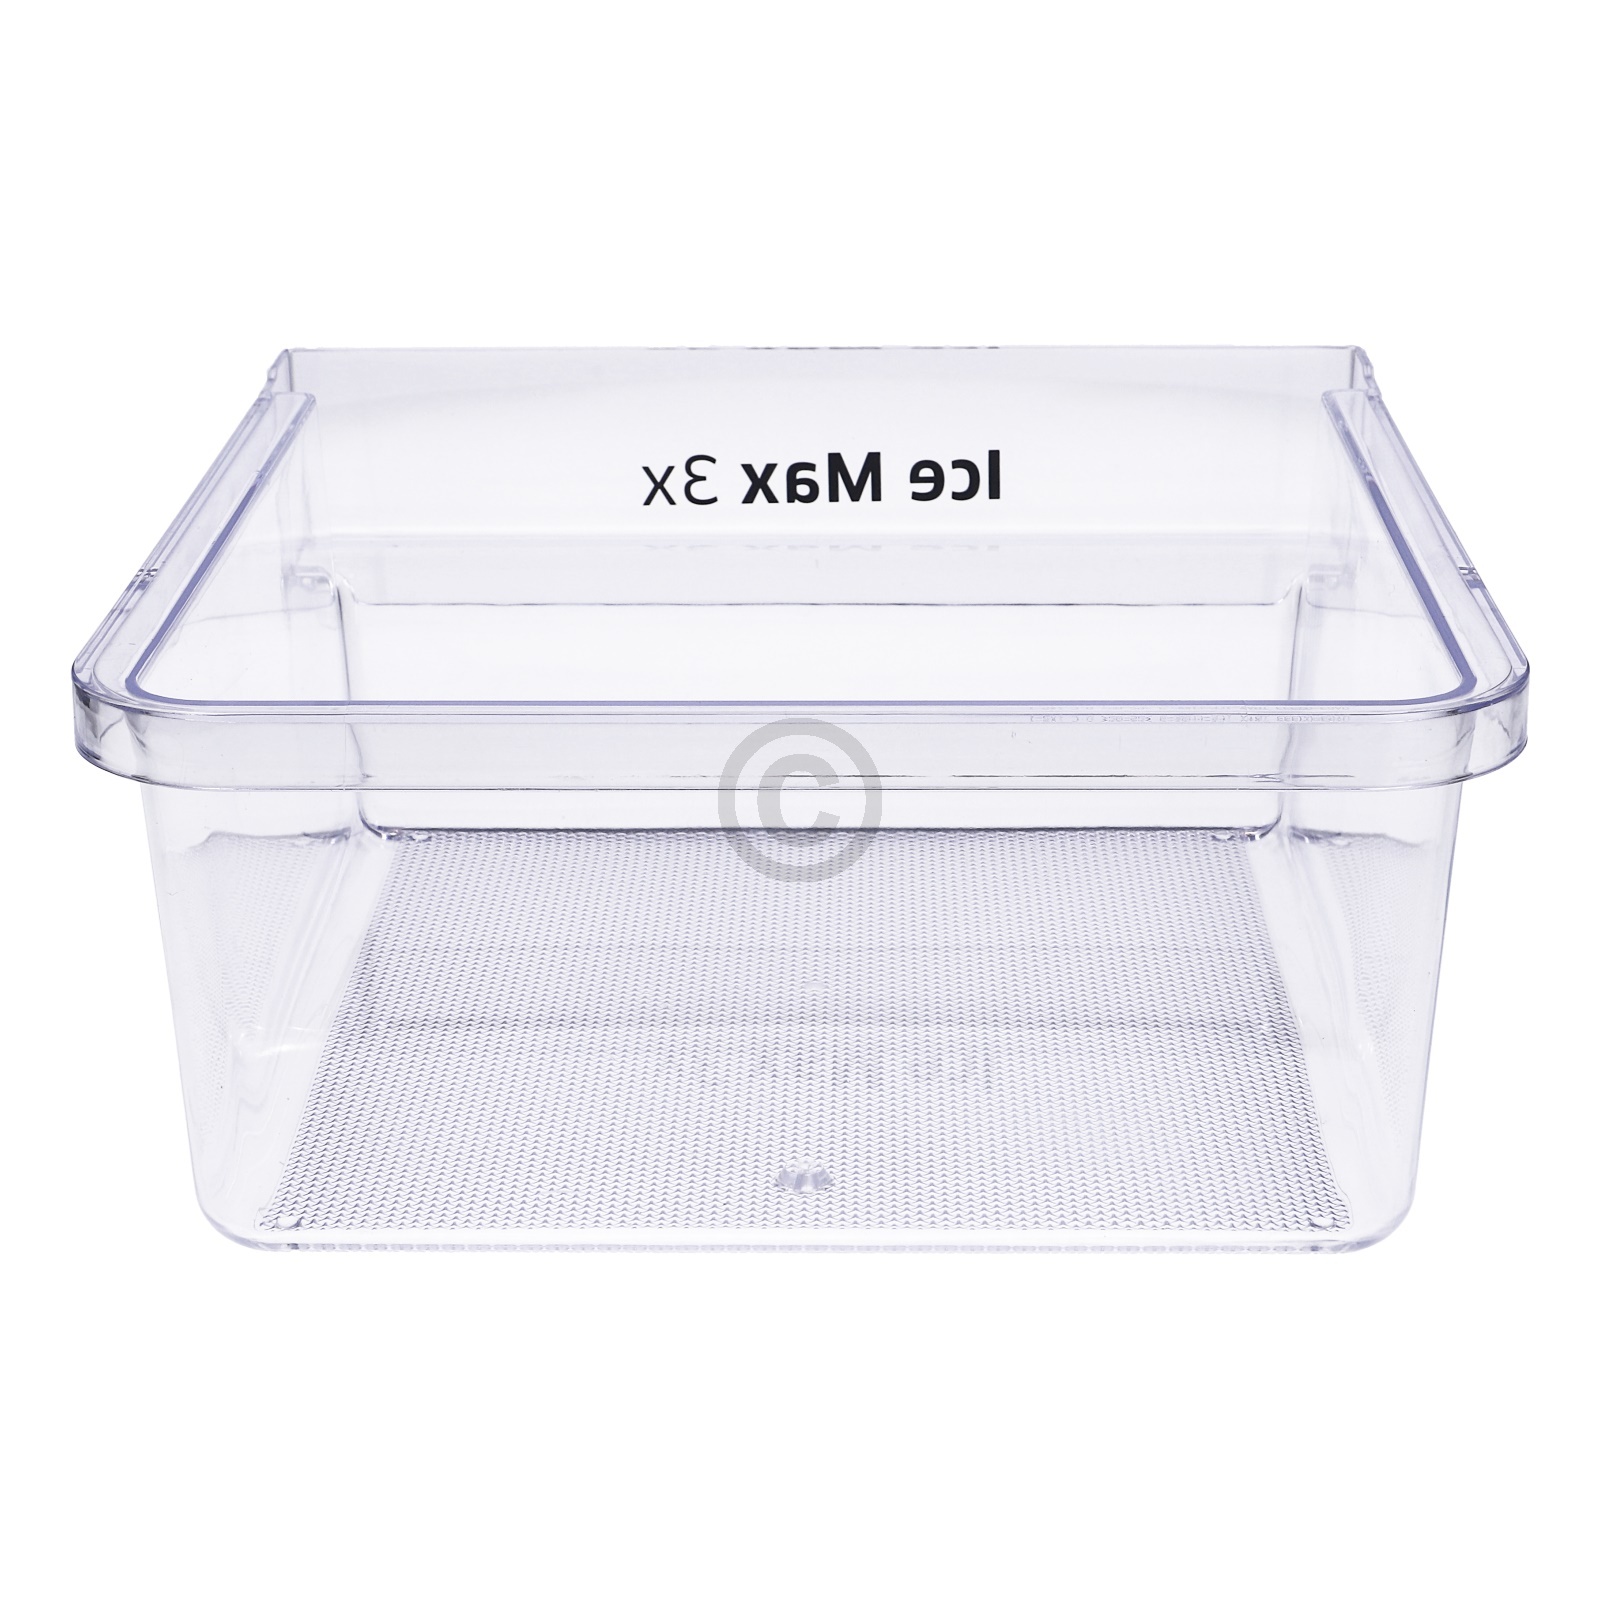 Eiswürfelbehälter IceMax3x SAMSUNG DA97-13670A für KühlGefrierKombination